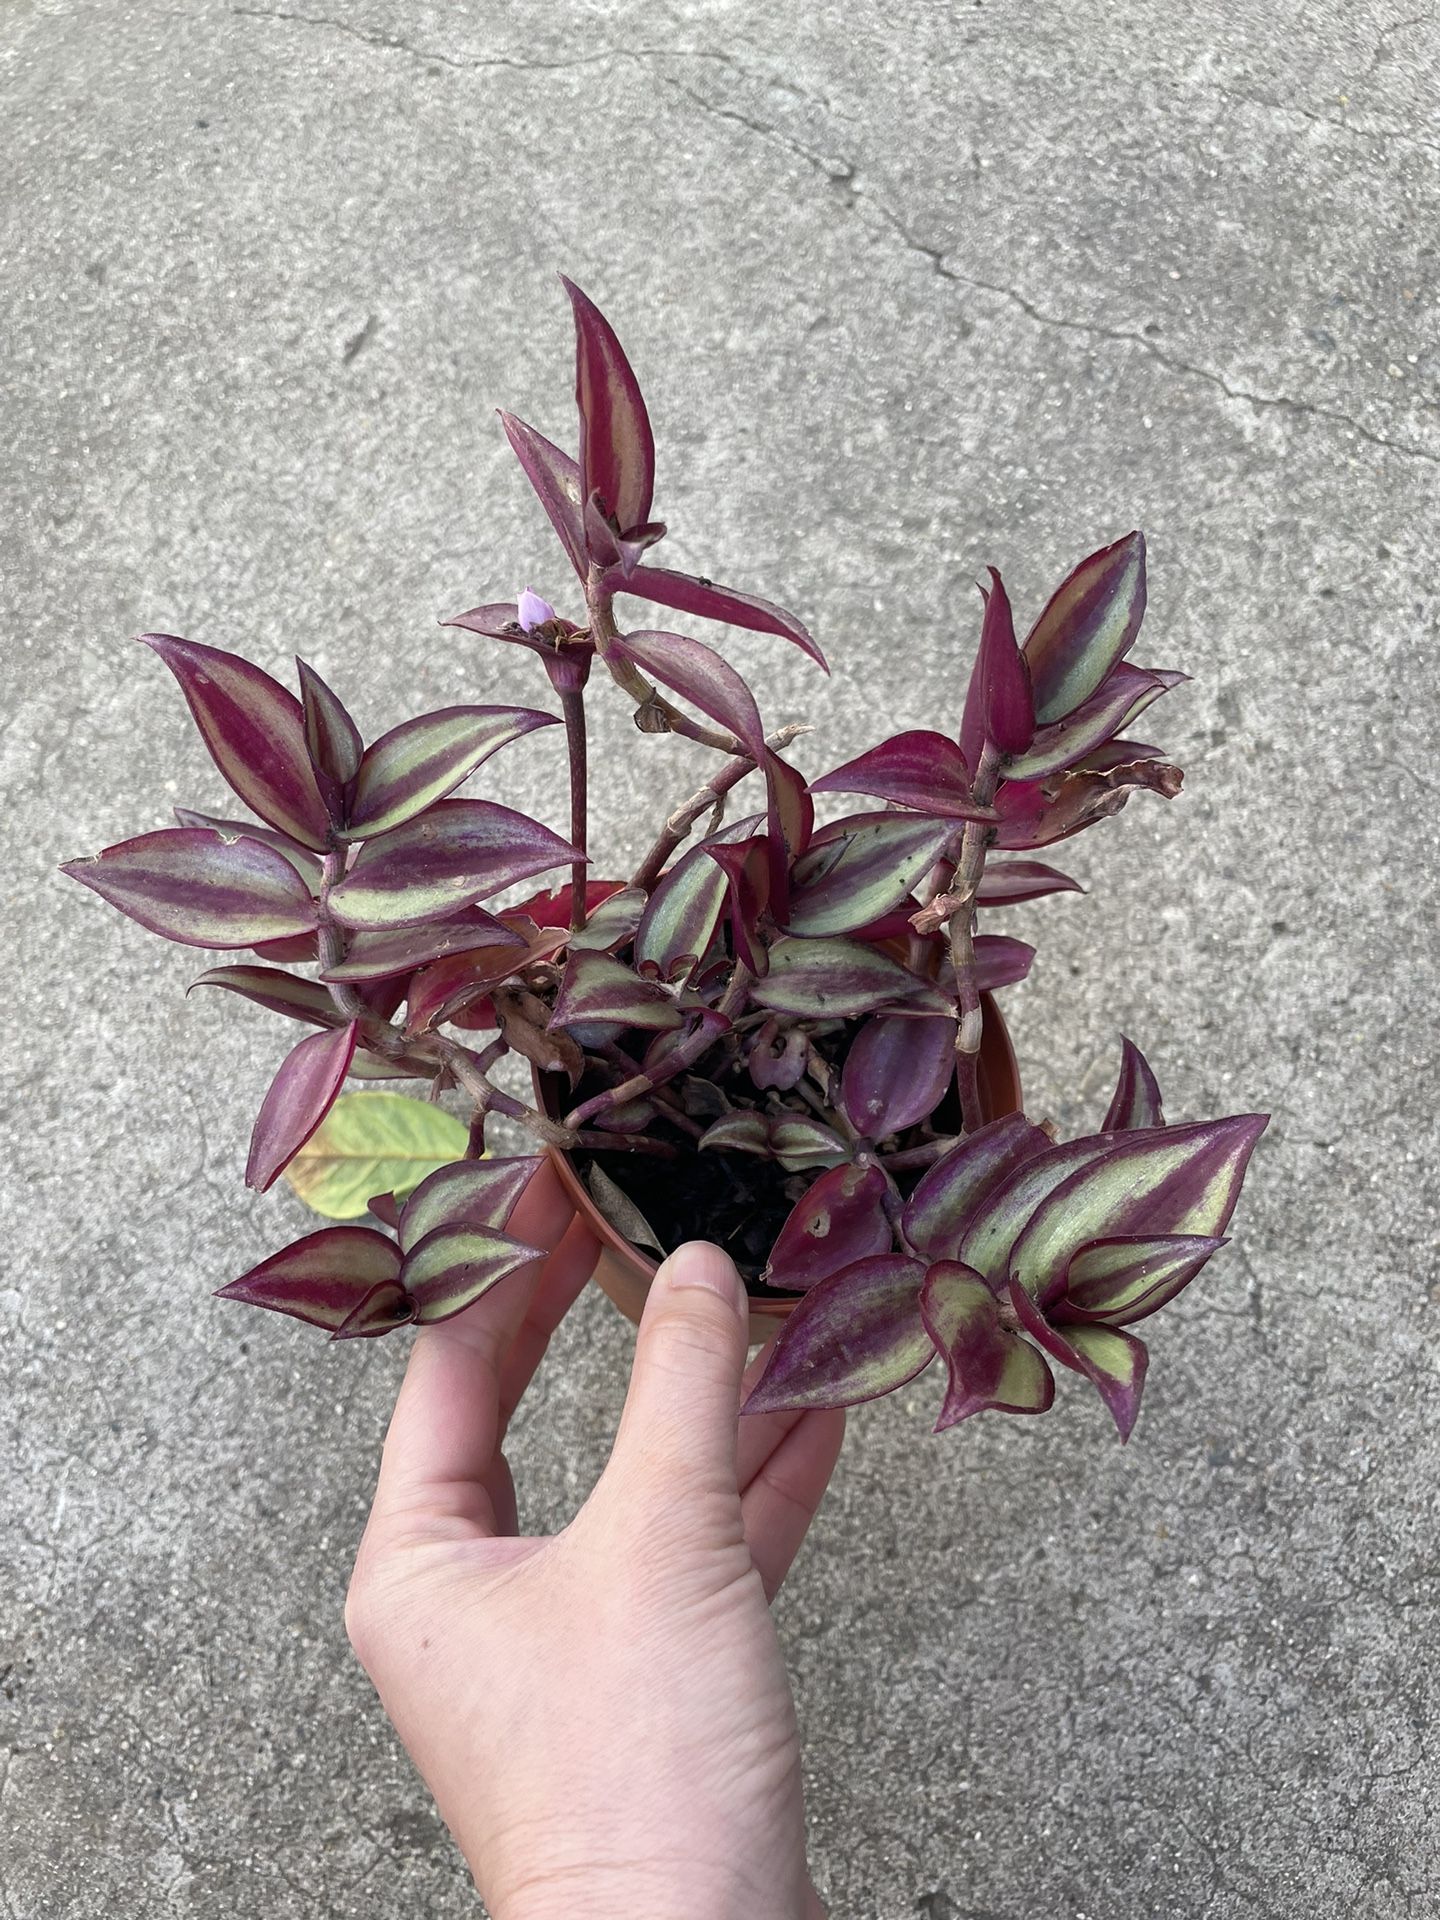 4in Pot Tradescantia Zebrina Plant